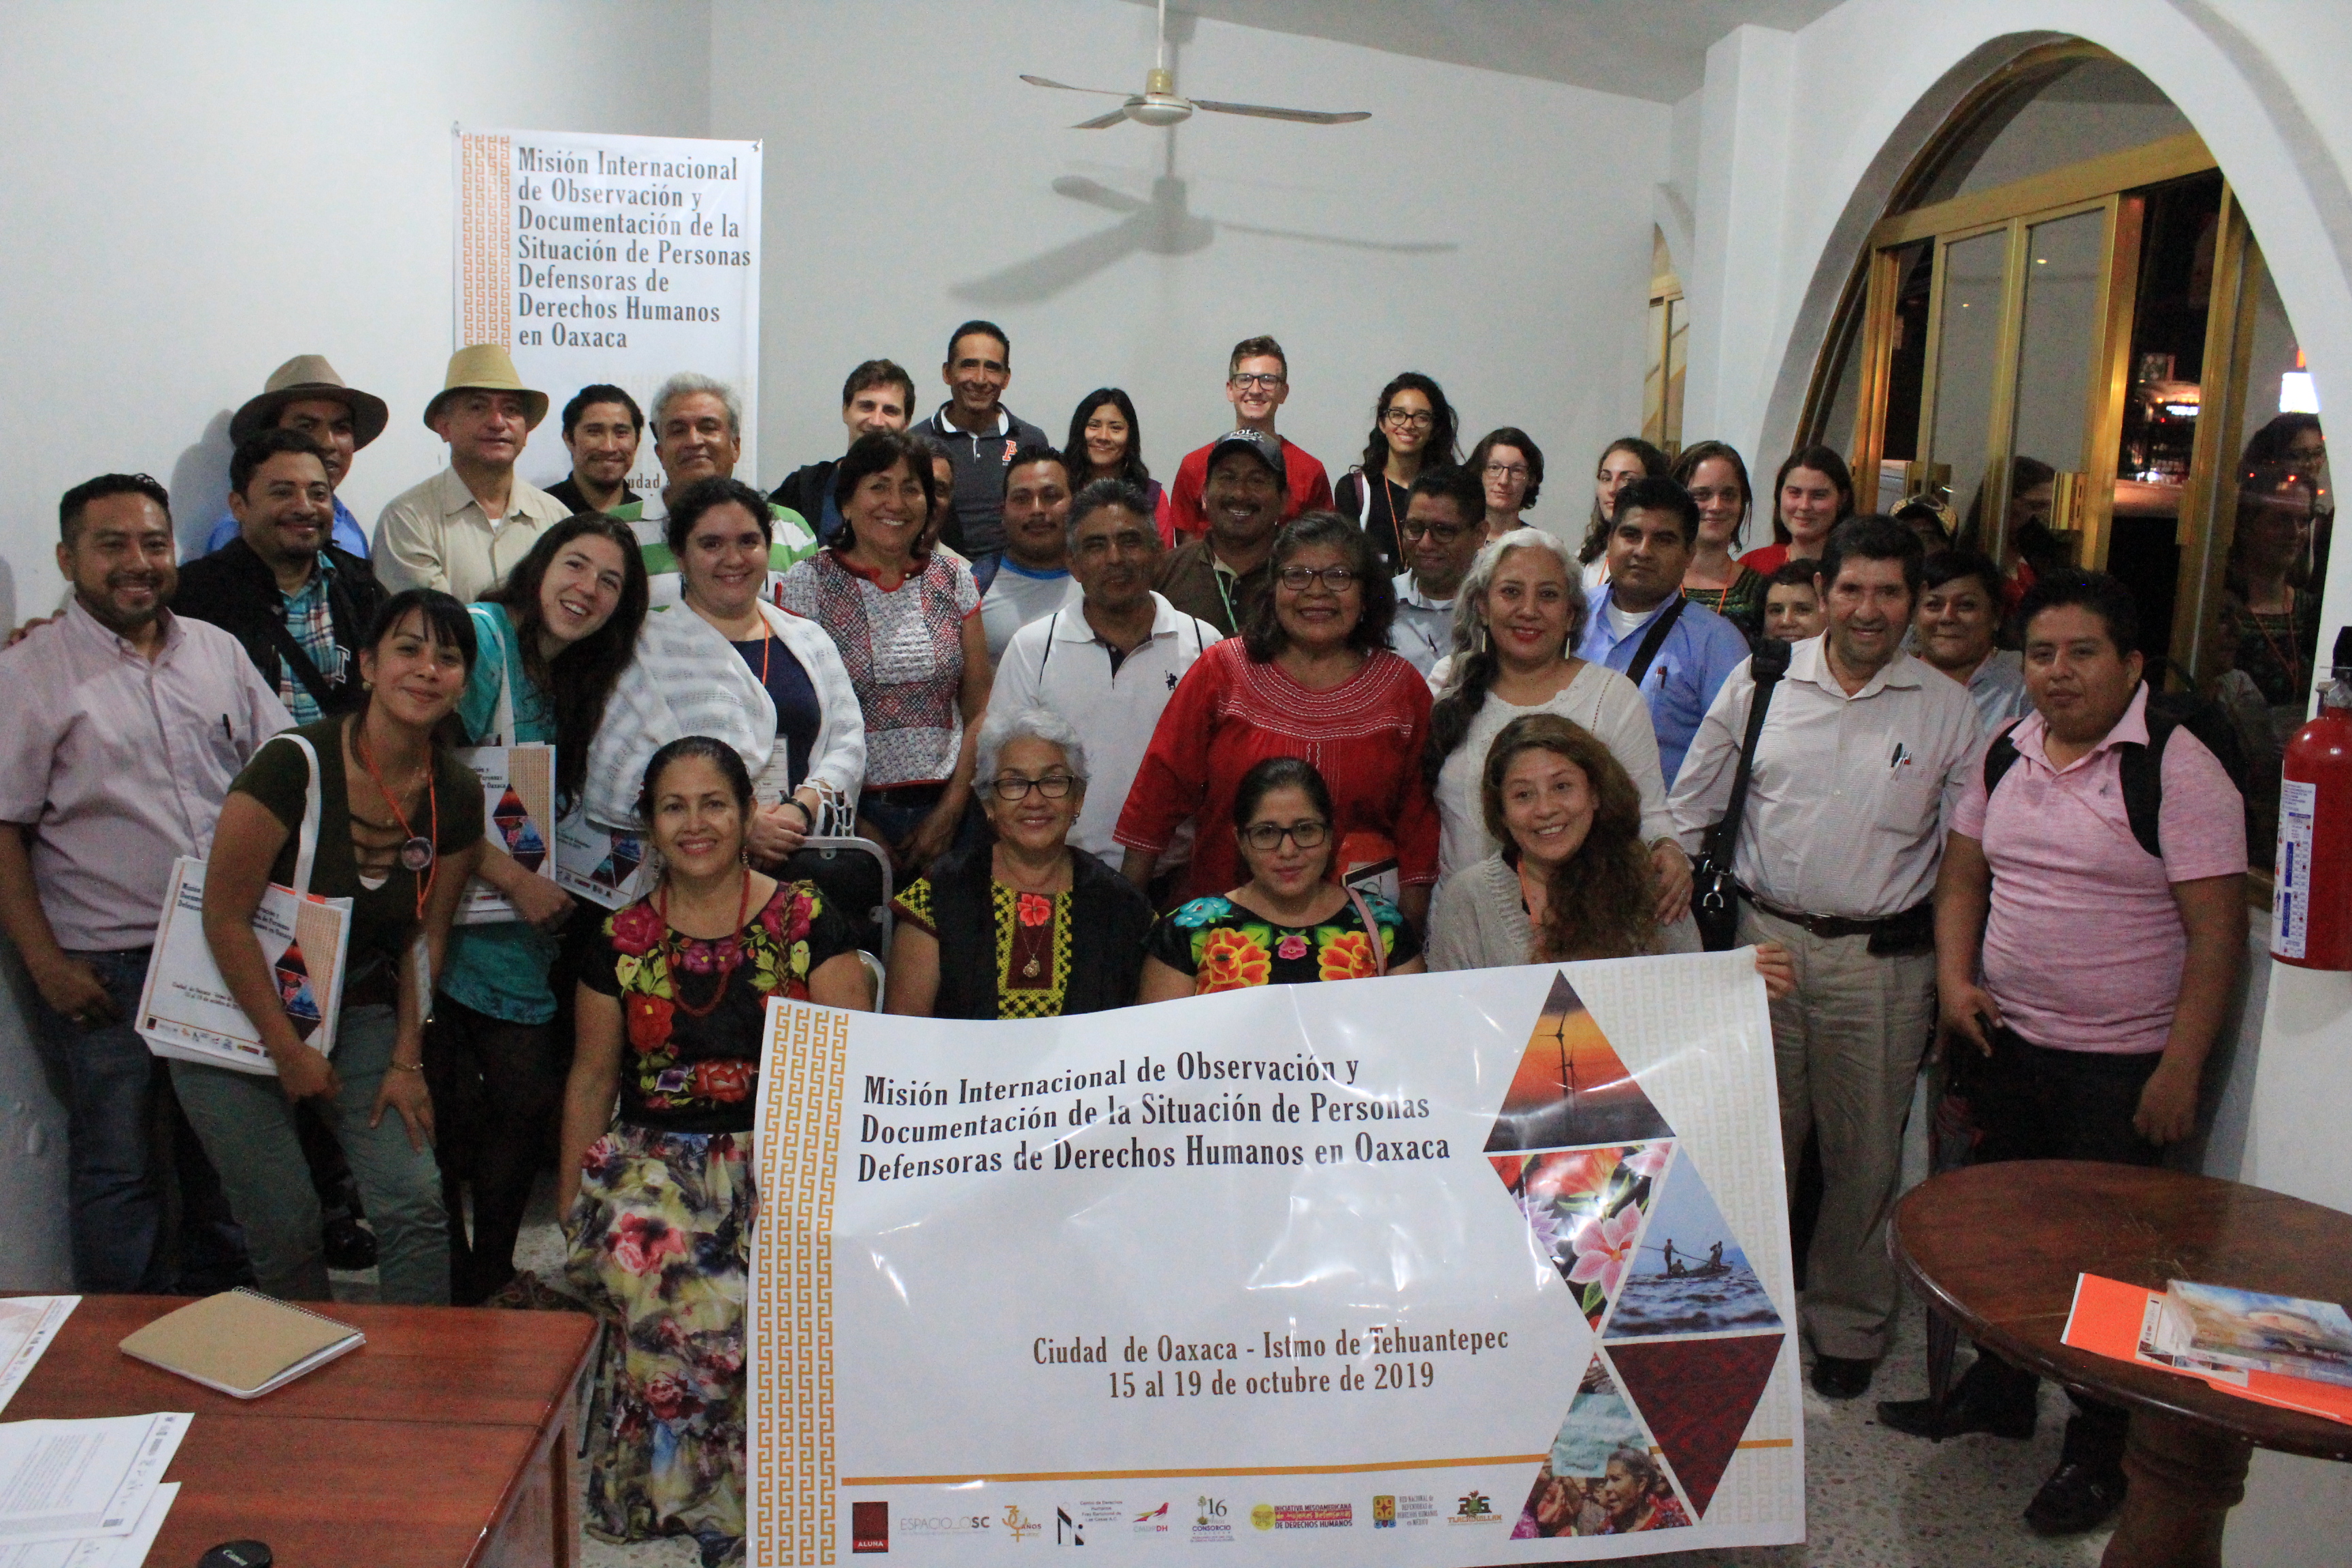 Concluyó el segundo día de la Misión de Observación en el Istmo de Tehuantepec